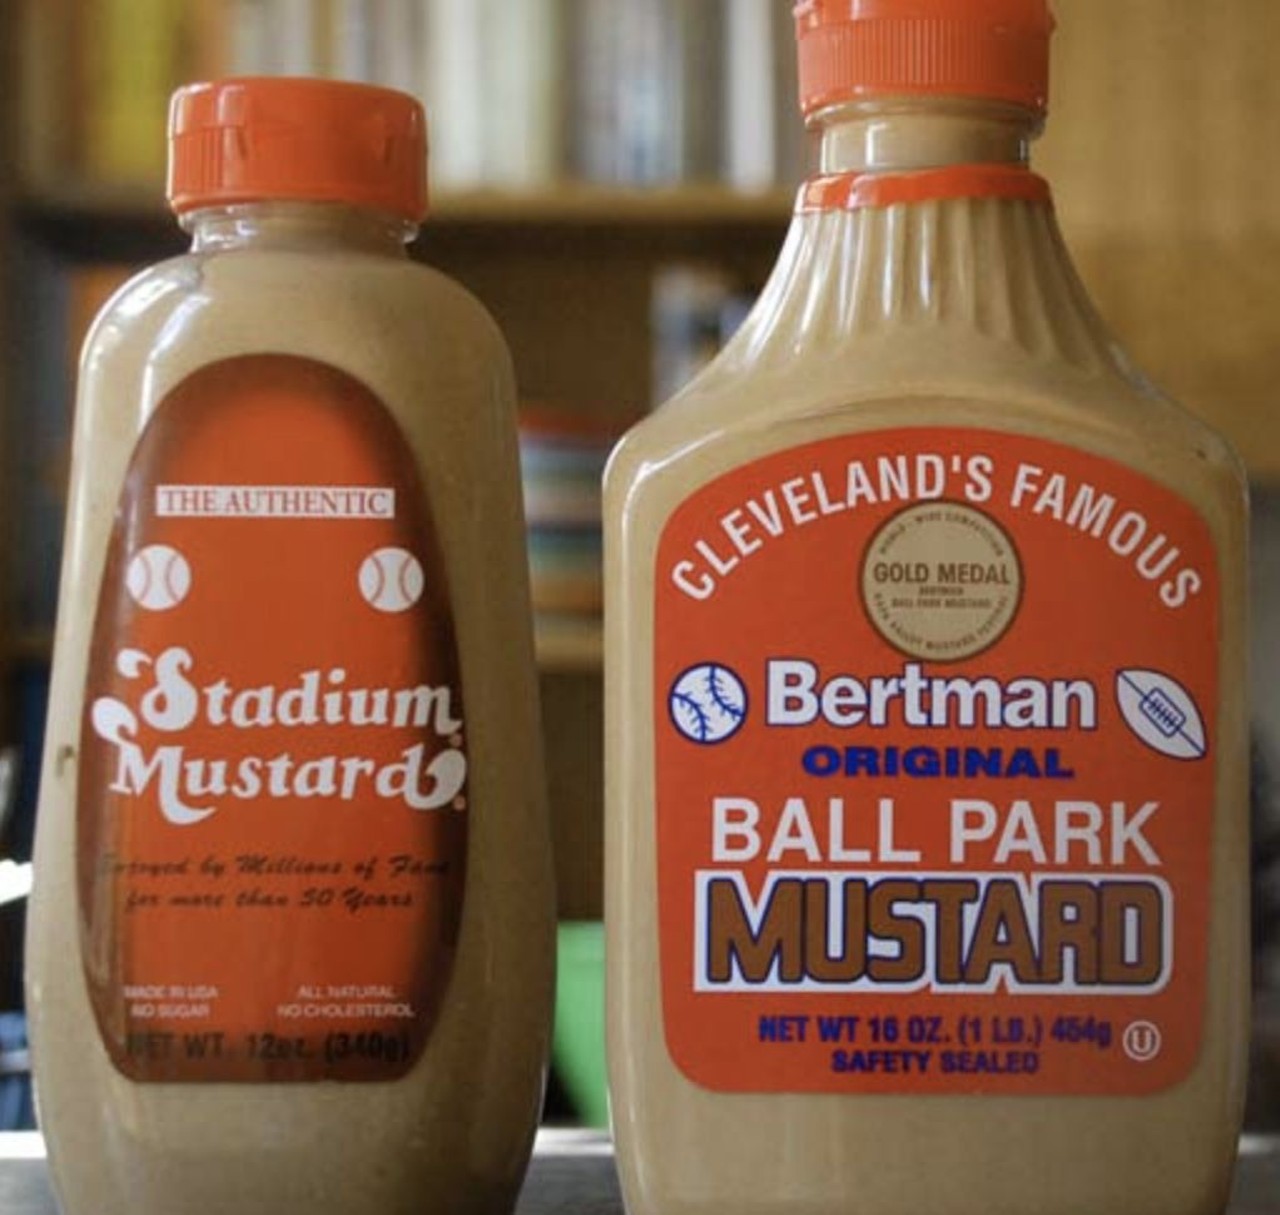 Stadium Mustard Goes on Everything You Eat
Photo via Scene Archives